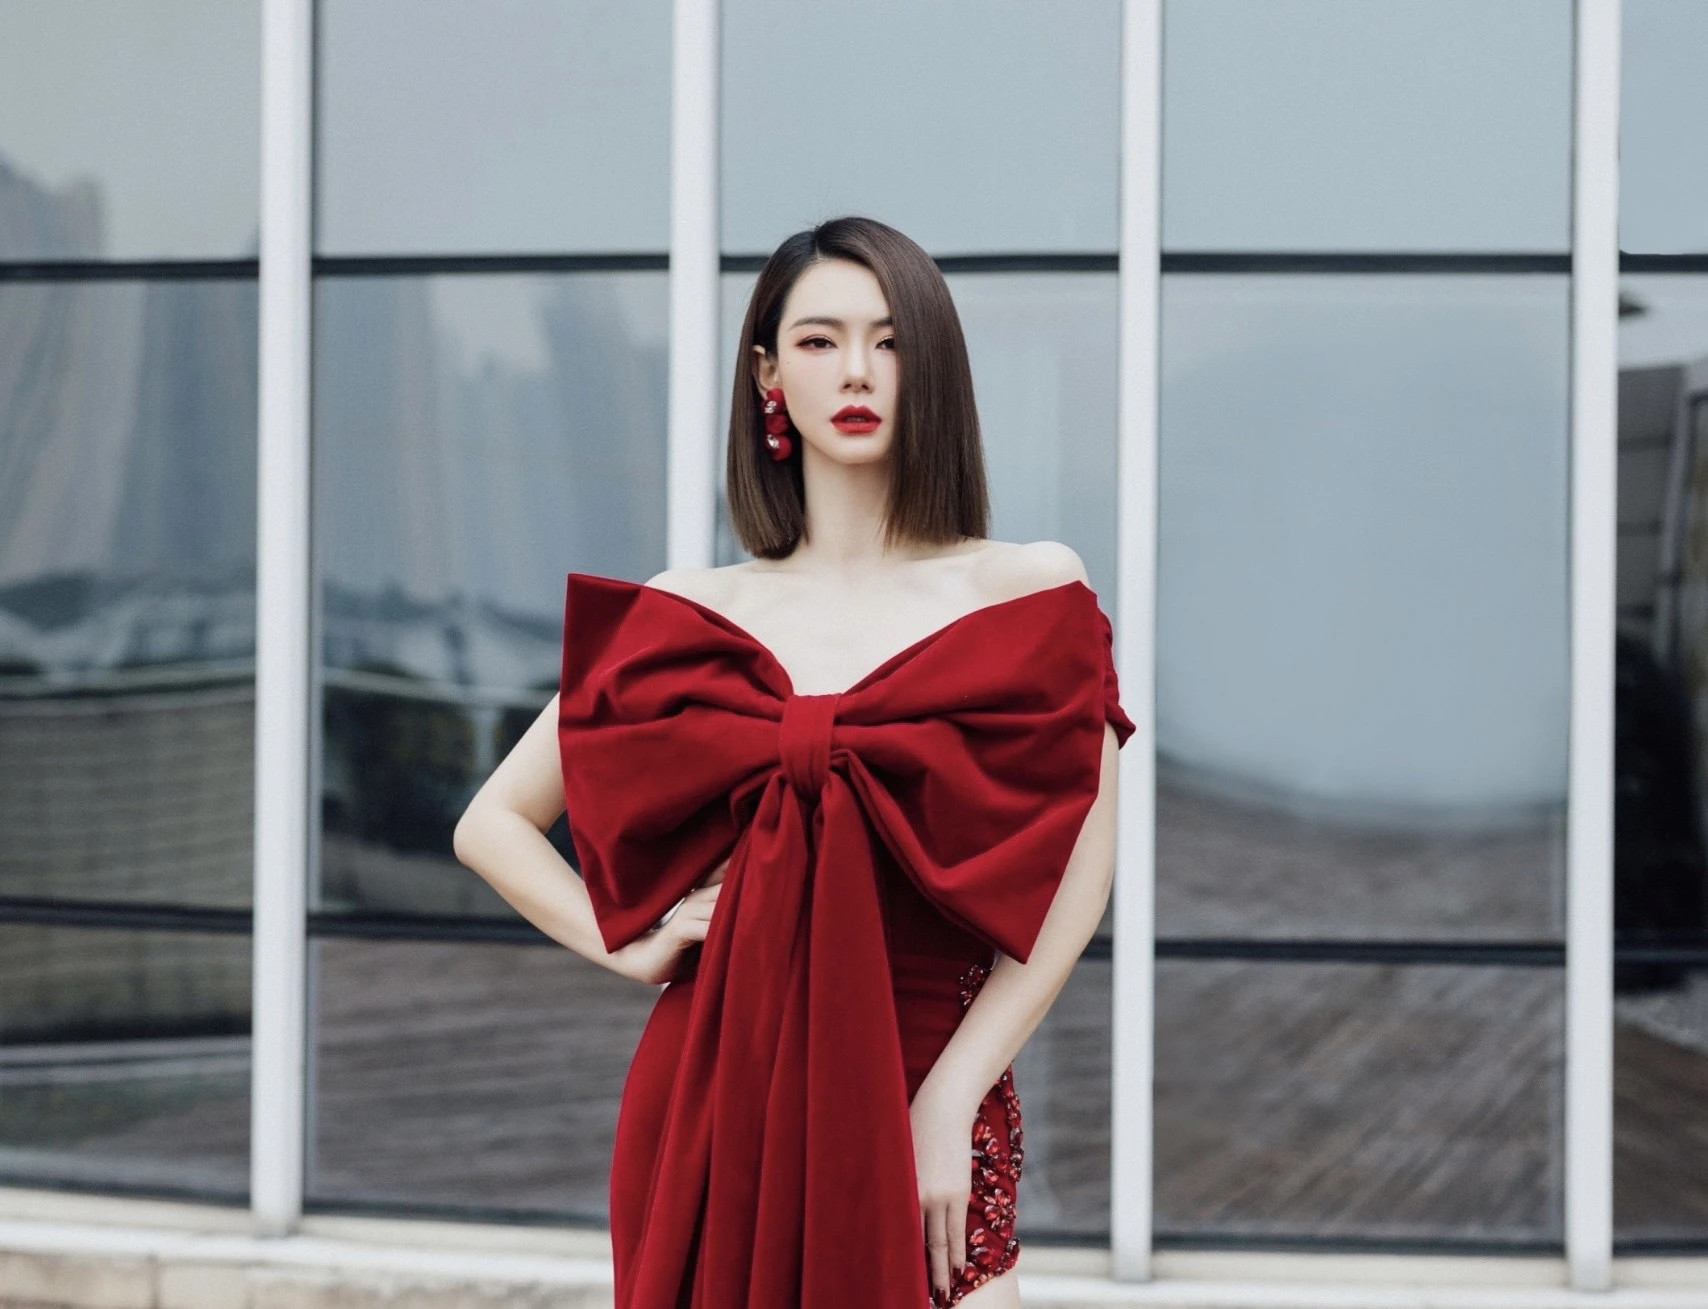 Hoa hậu 1m86 của Việt Nam sải bước sàn catwalk, nhan sắc khí chất được so sánh với ngôi sao hàng đầu Trung Quốc - ảnh 6